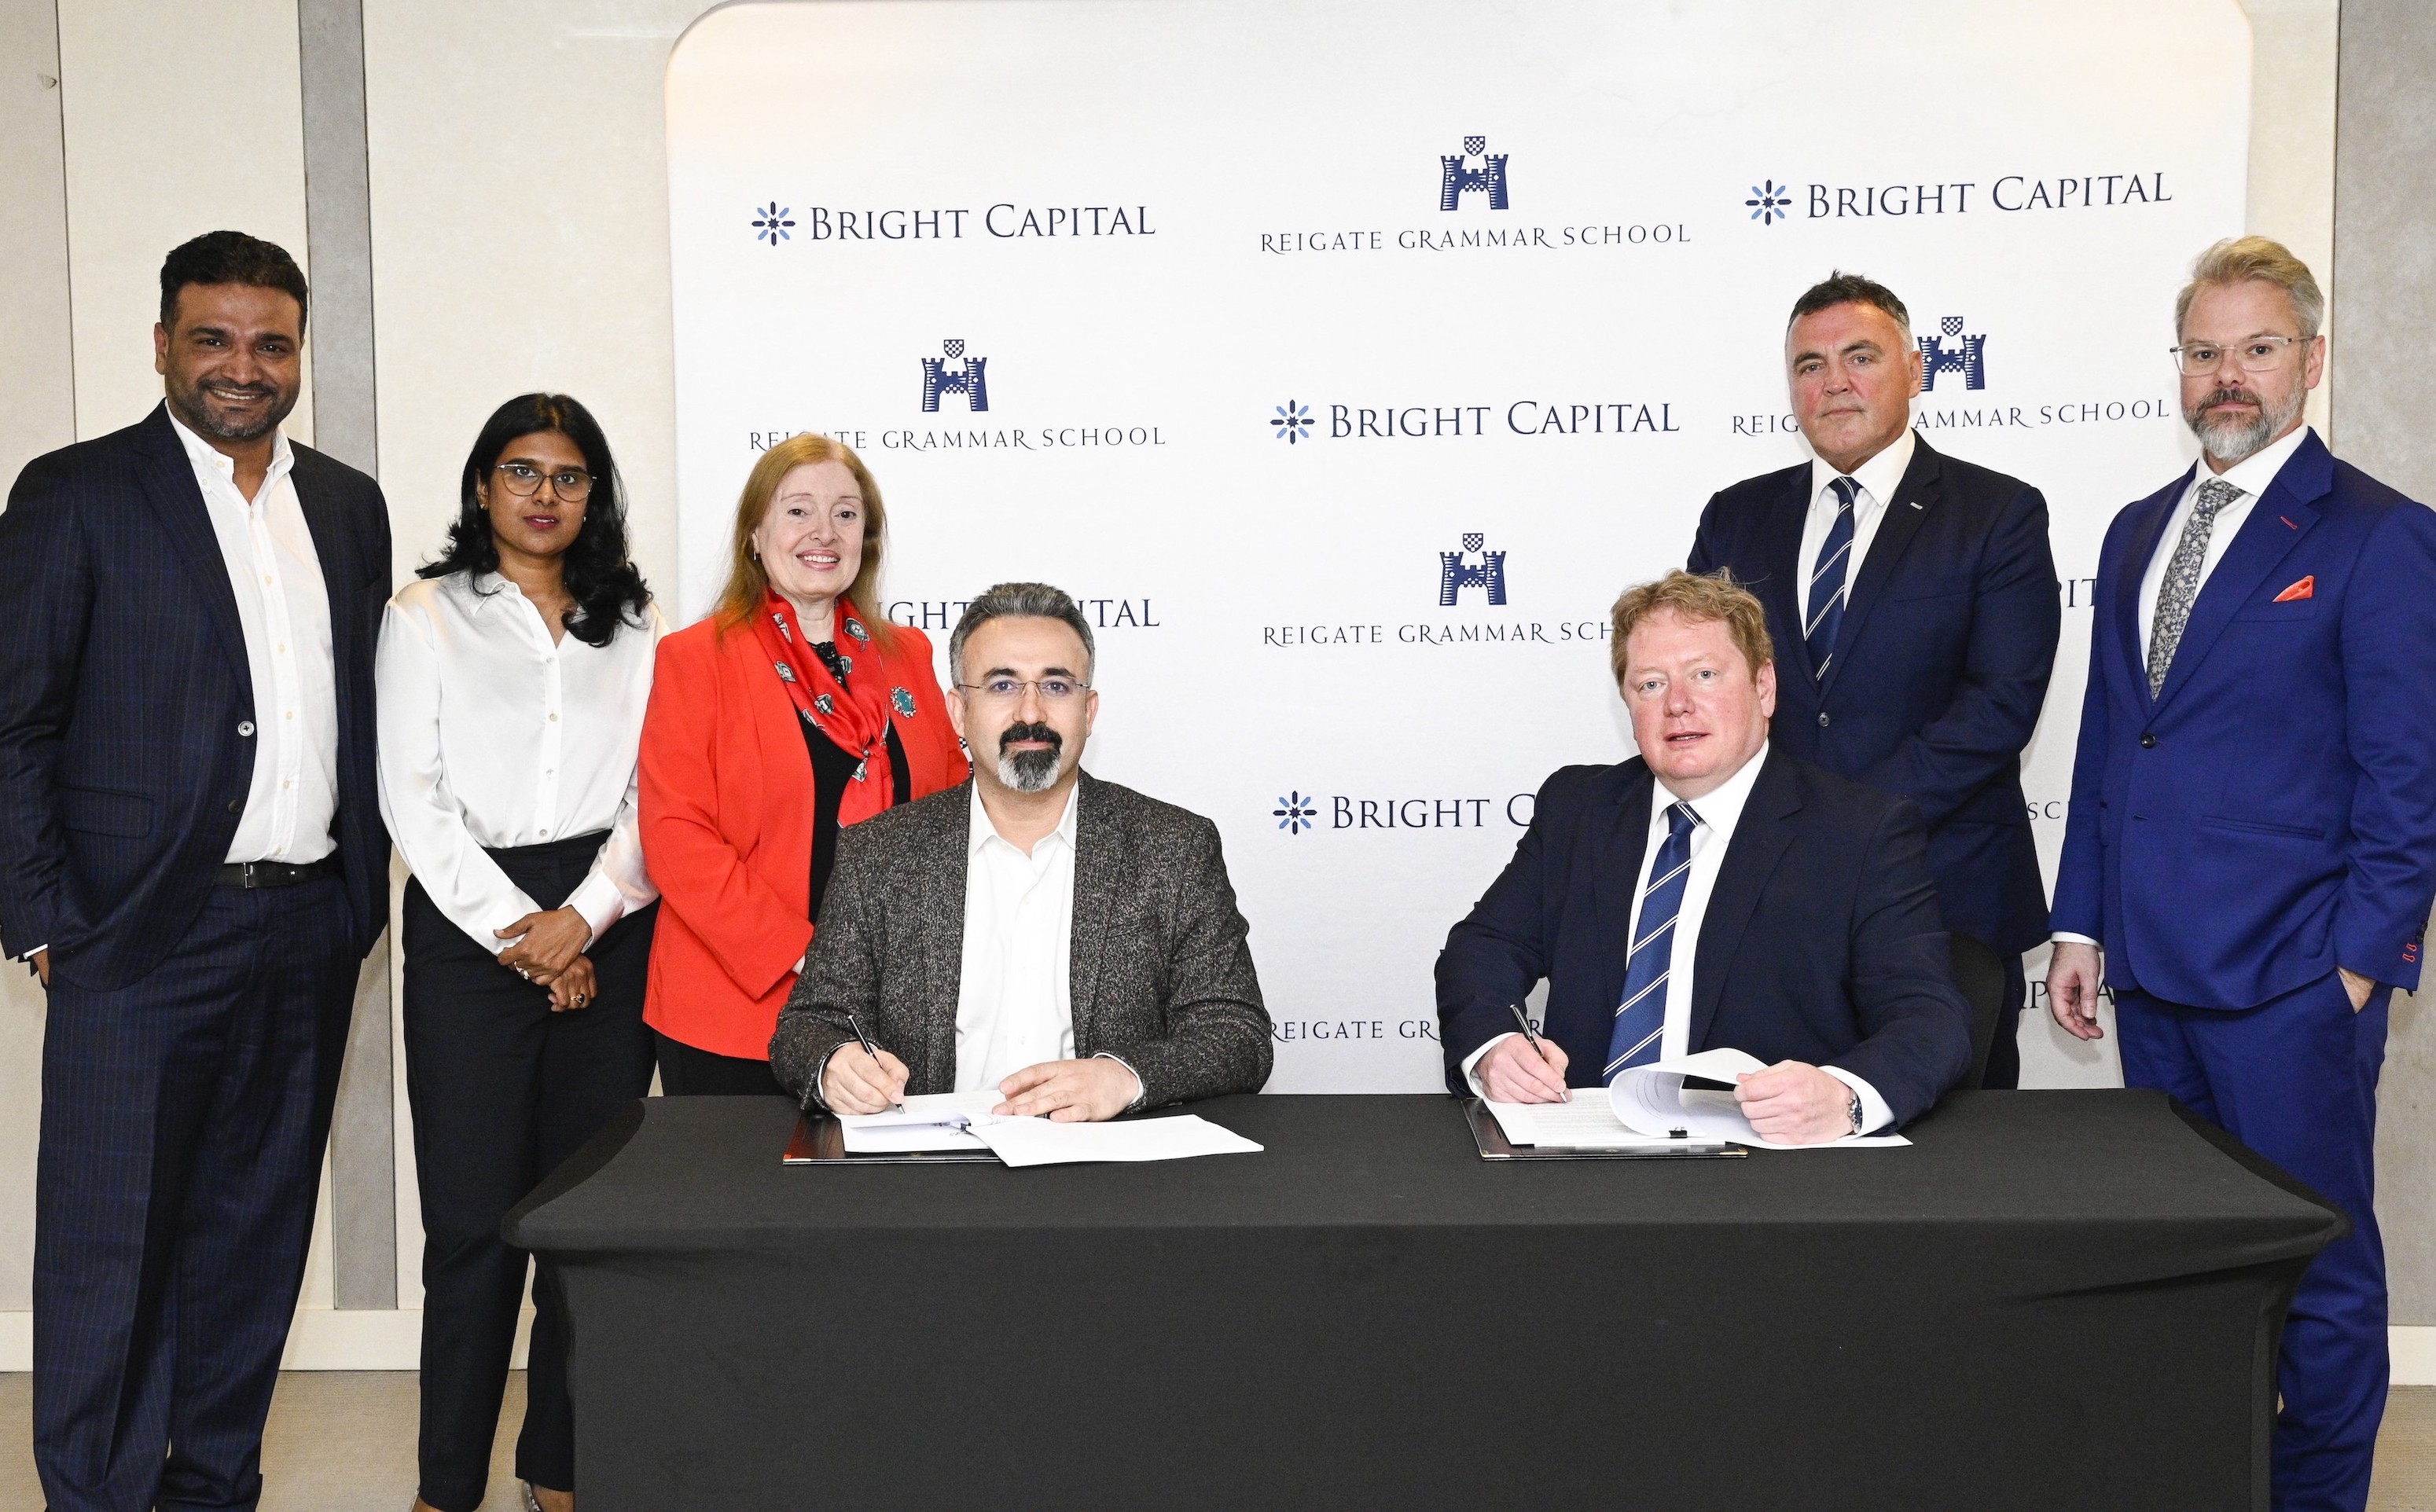 شركة برايت كابيتال للاستثمار توقع اتفاقية مع مدرسة ريغيت غرامر سكول، إحدى المدارس البريطانية الرائدة، لإنشاء سلسلة من المدارس البريطانية الراقية في الإمارات العربية المتحدة